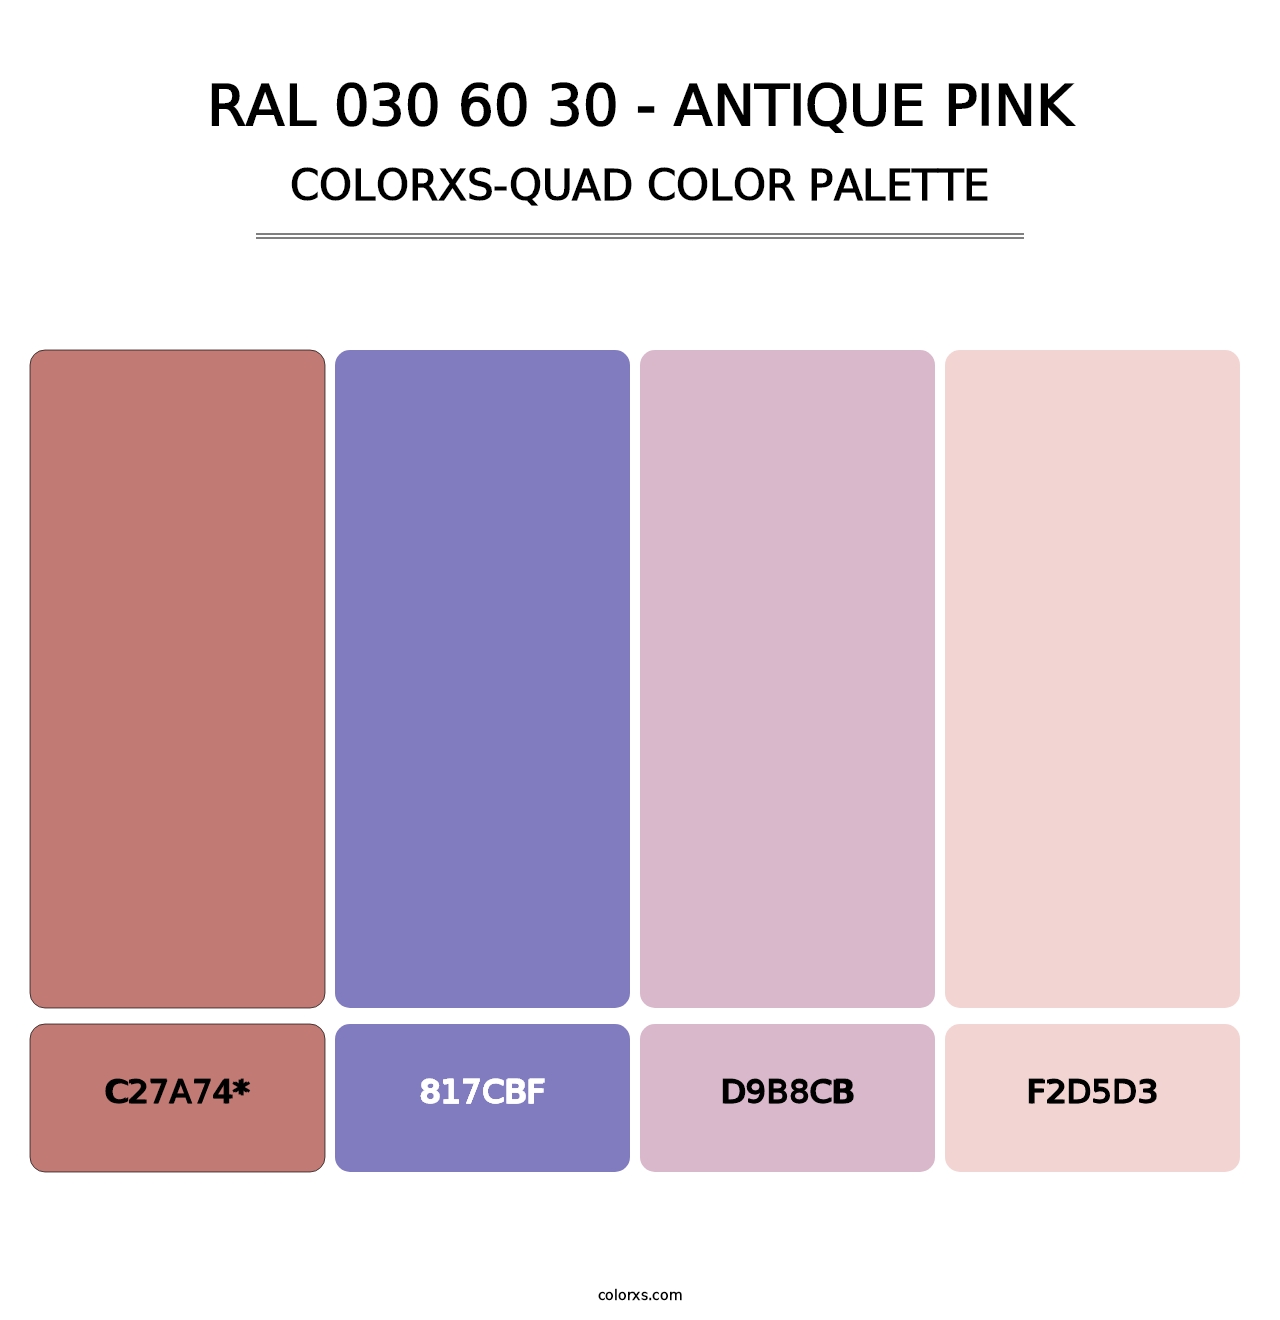 RAL 030 60 30 - Antique Pink - Colorxs Quad Palette